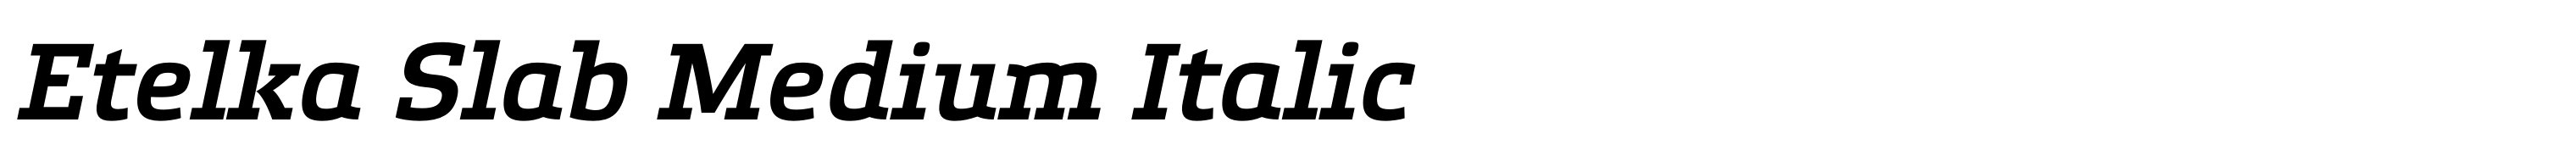 Etelka Slab Medium Italic